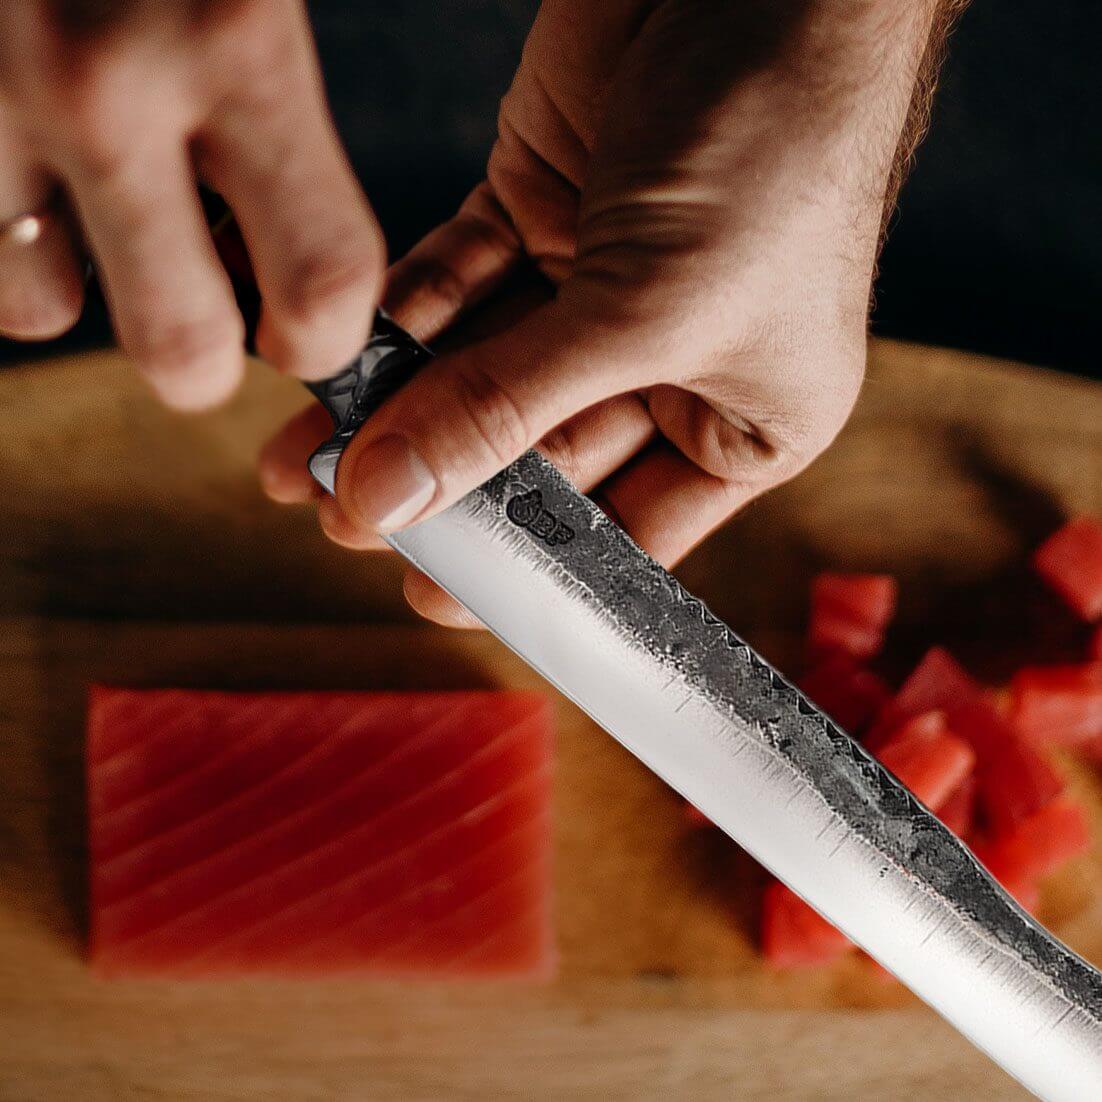 Full Name Laser Engrave Knives - Ergo Chef Knives